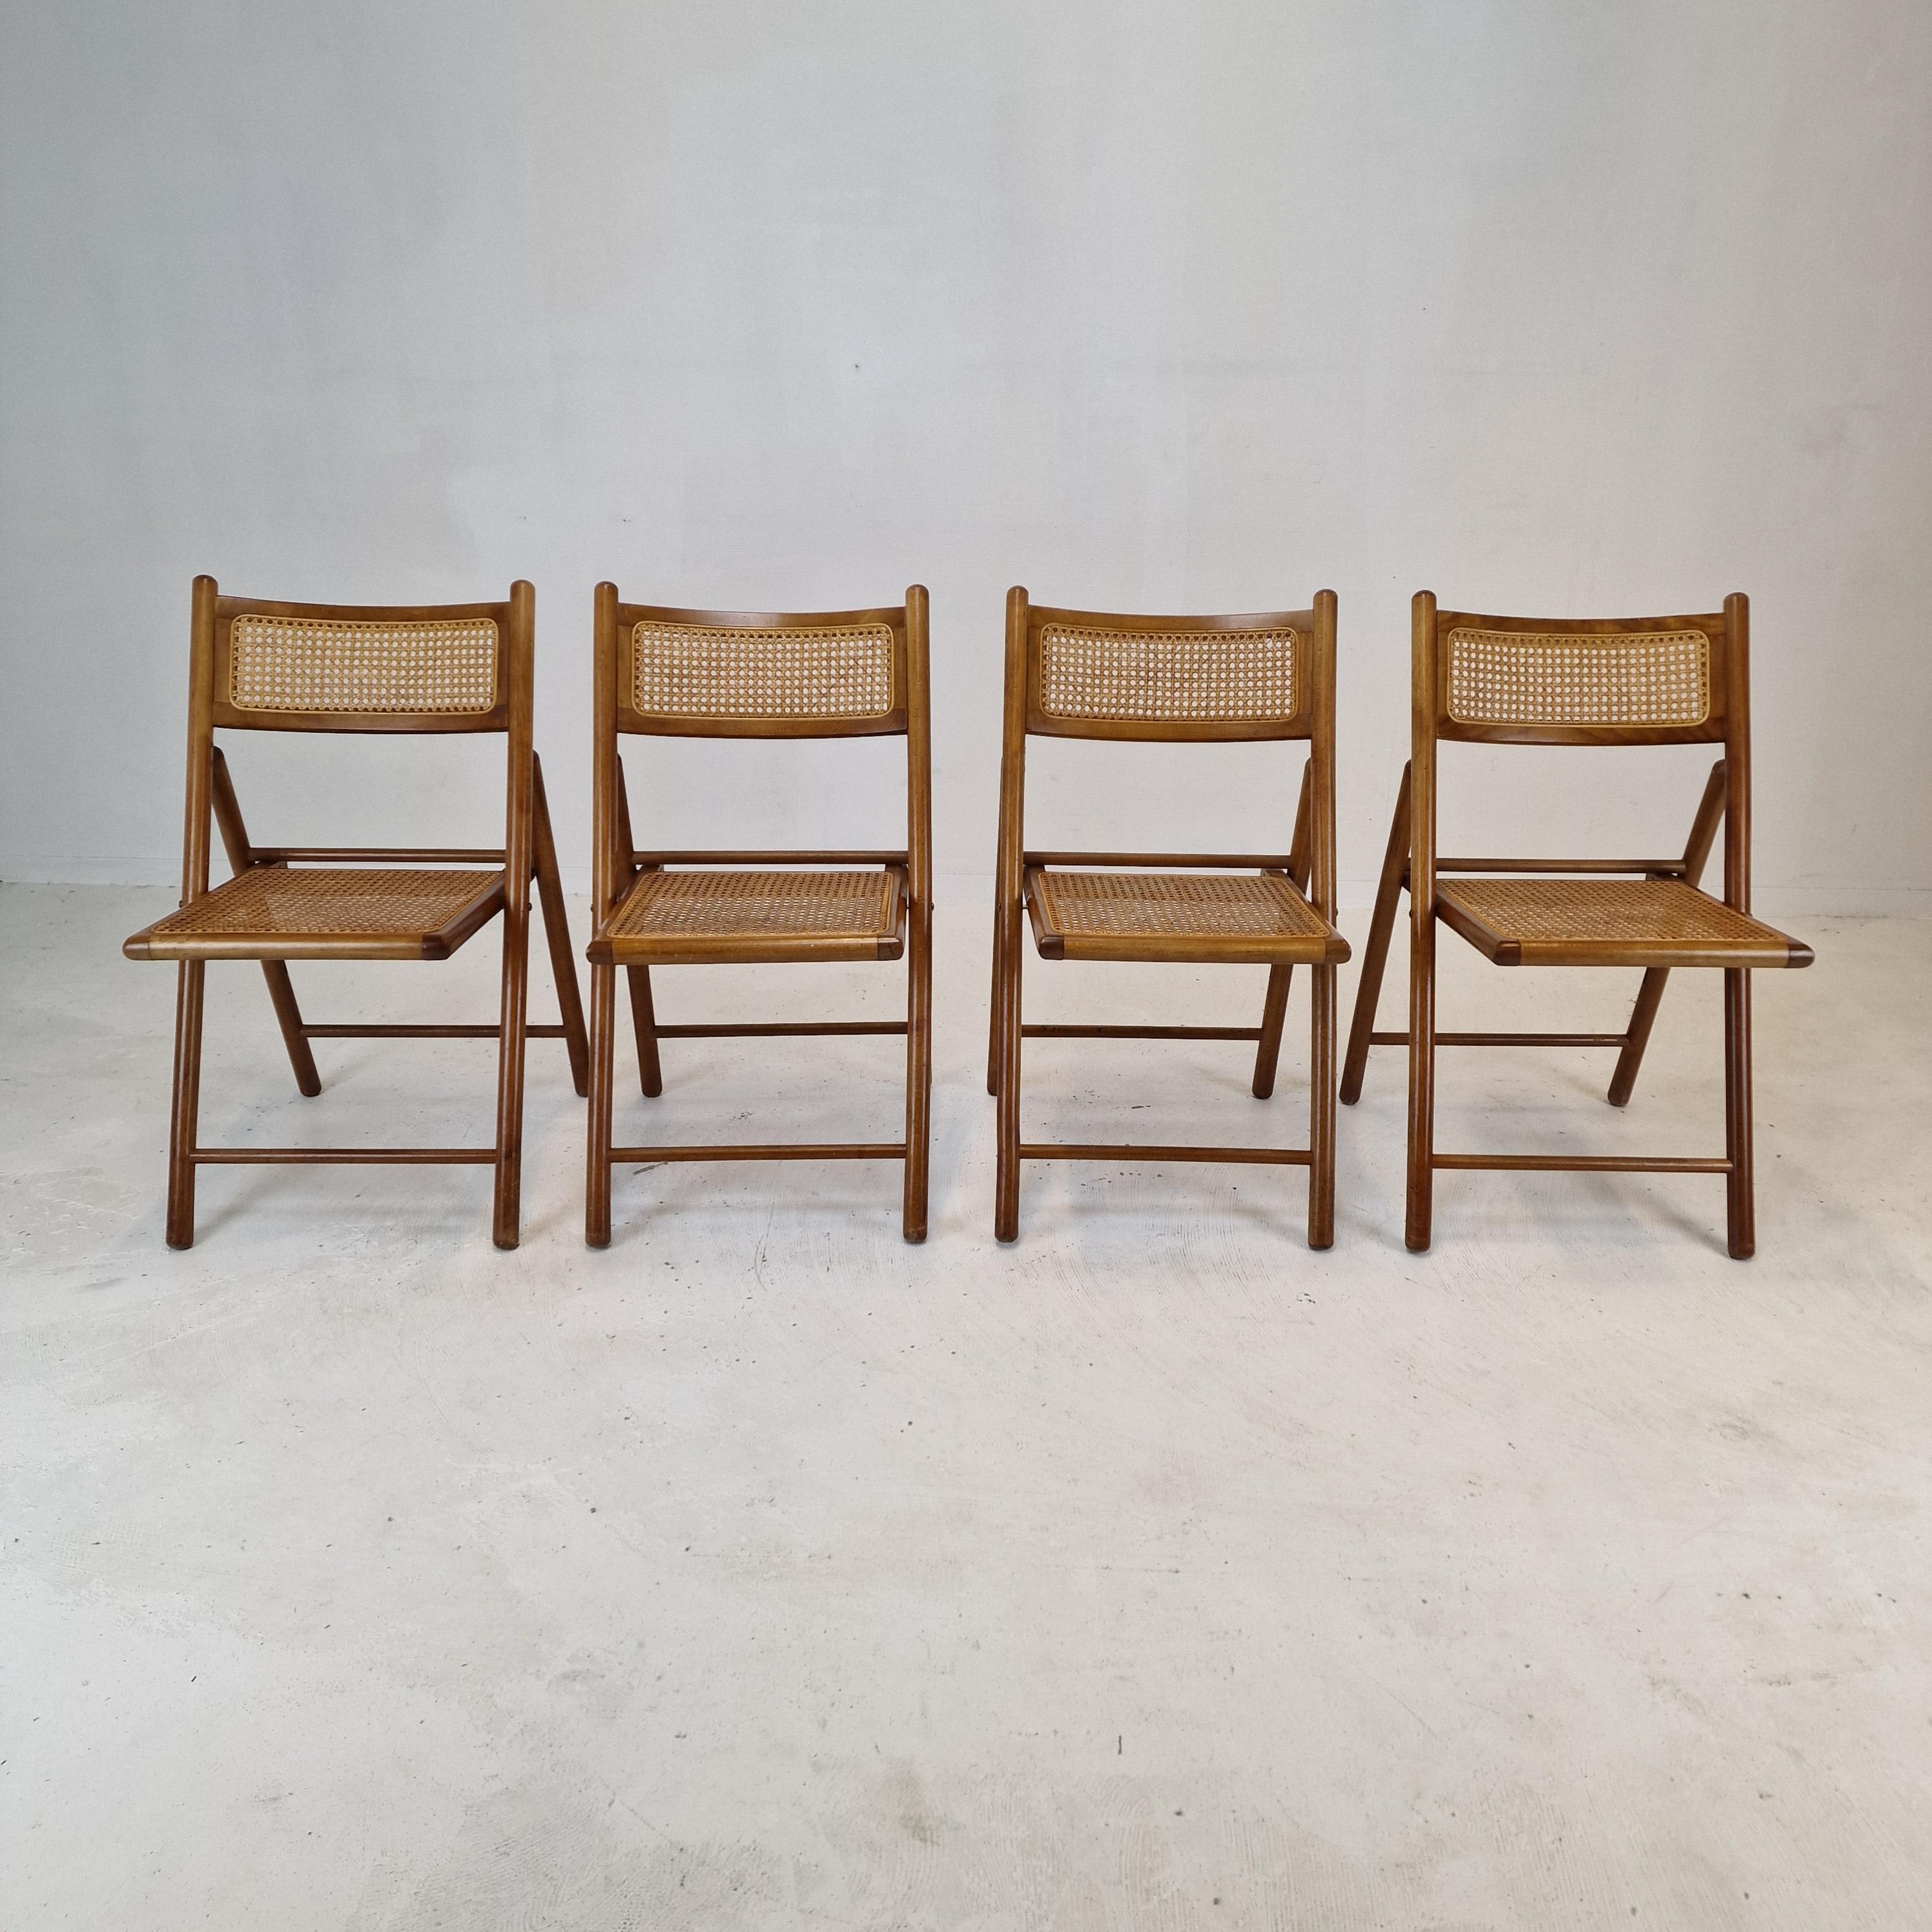 Très bel ensemble de 4 chaises pliantes italiennes, fabriquées dans les années 1980.

L'assise des chaises est en osier.
La structure est en bois massif.

Les chaises sont en bon état.

Nous travaillons avec des emballeurs et des expéditeurs